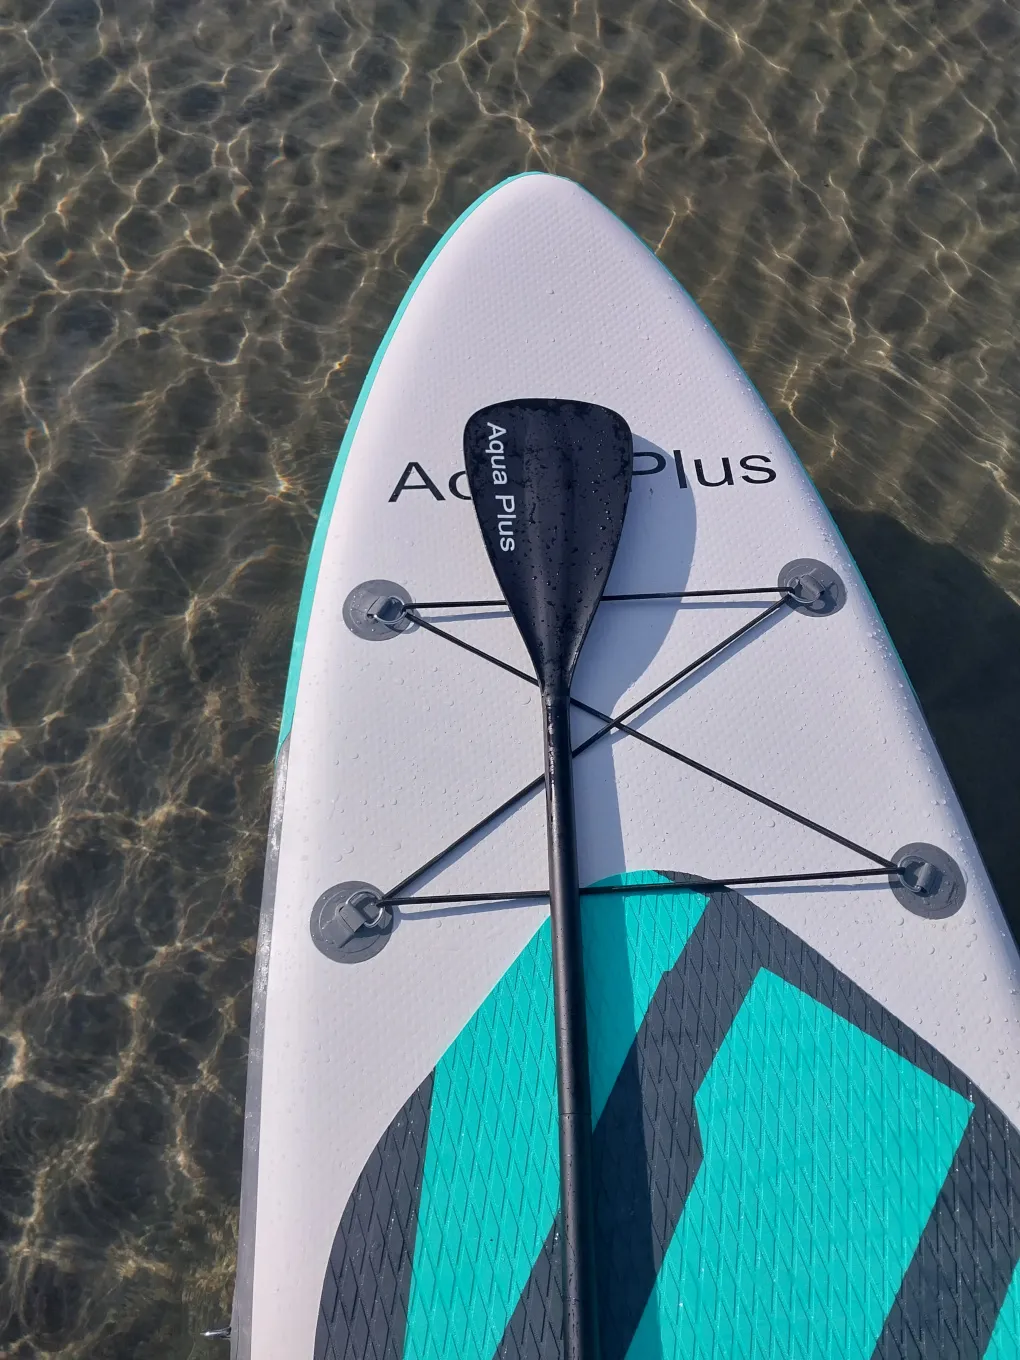 Alquiler de Kayak